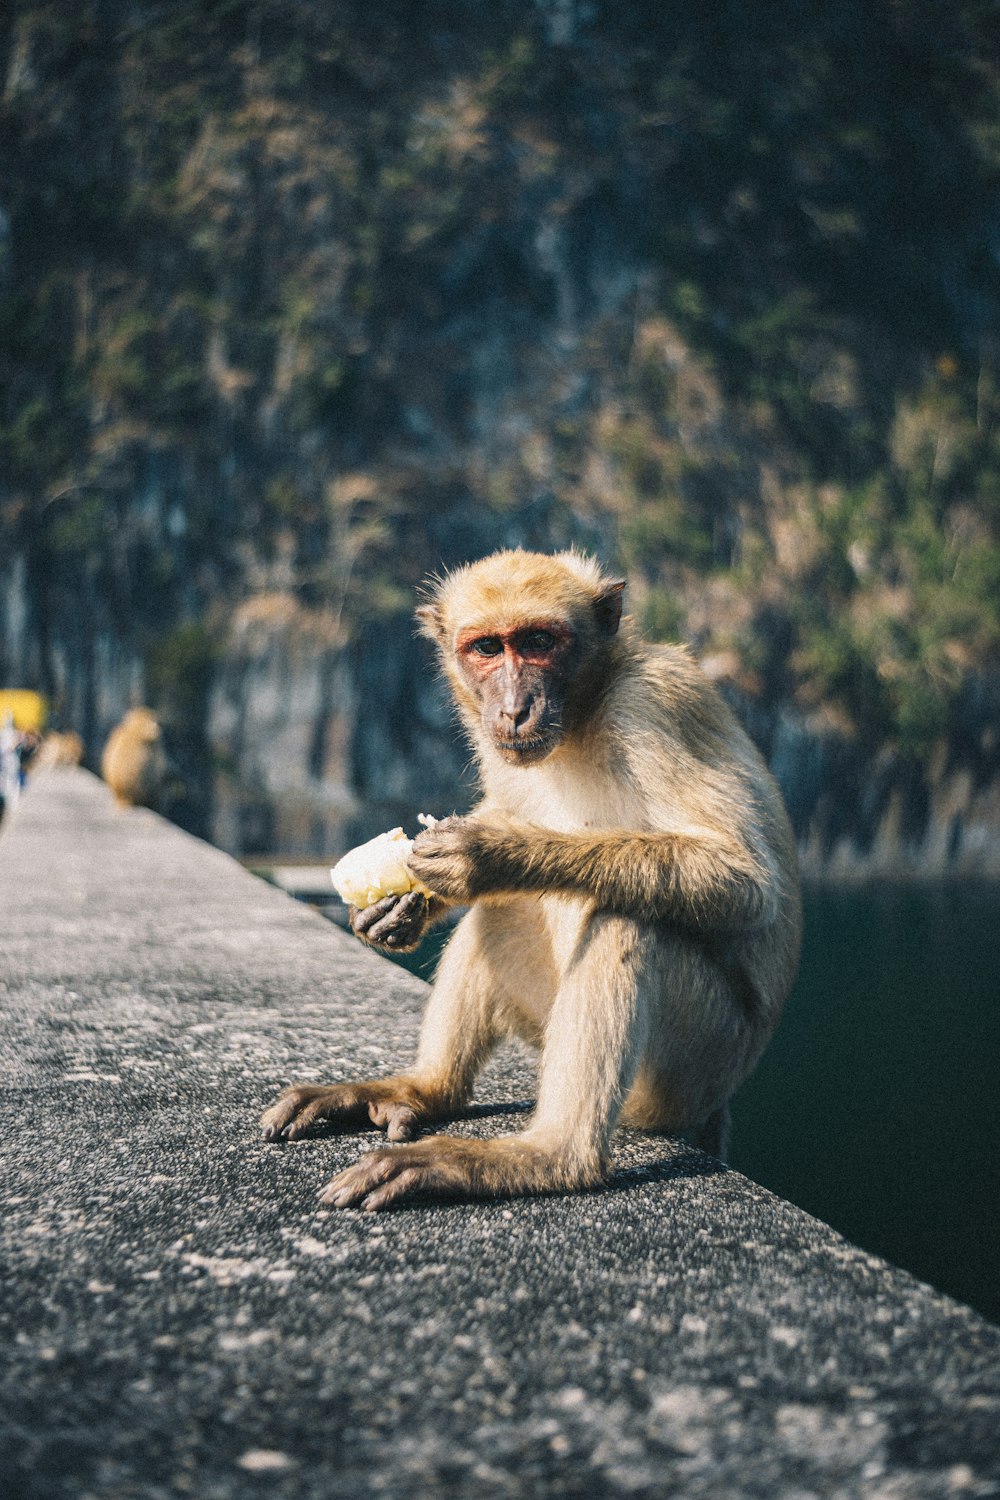 Brauner Affe sitzt tagsüber auf grauem Betonpflaster